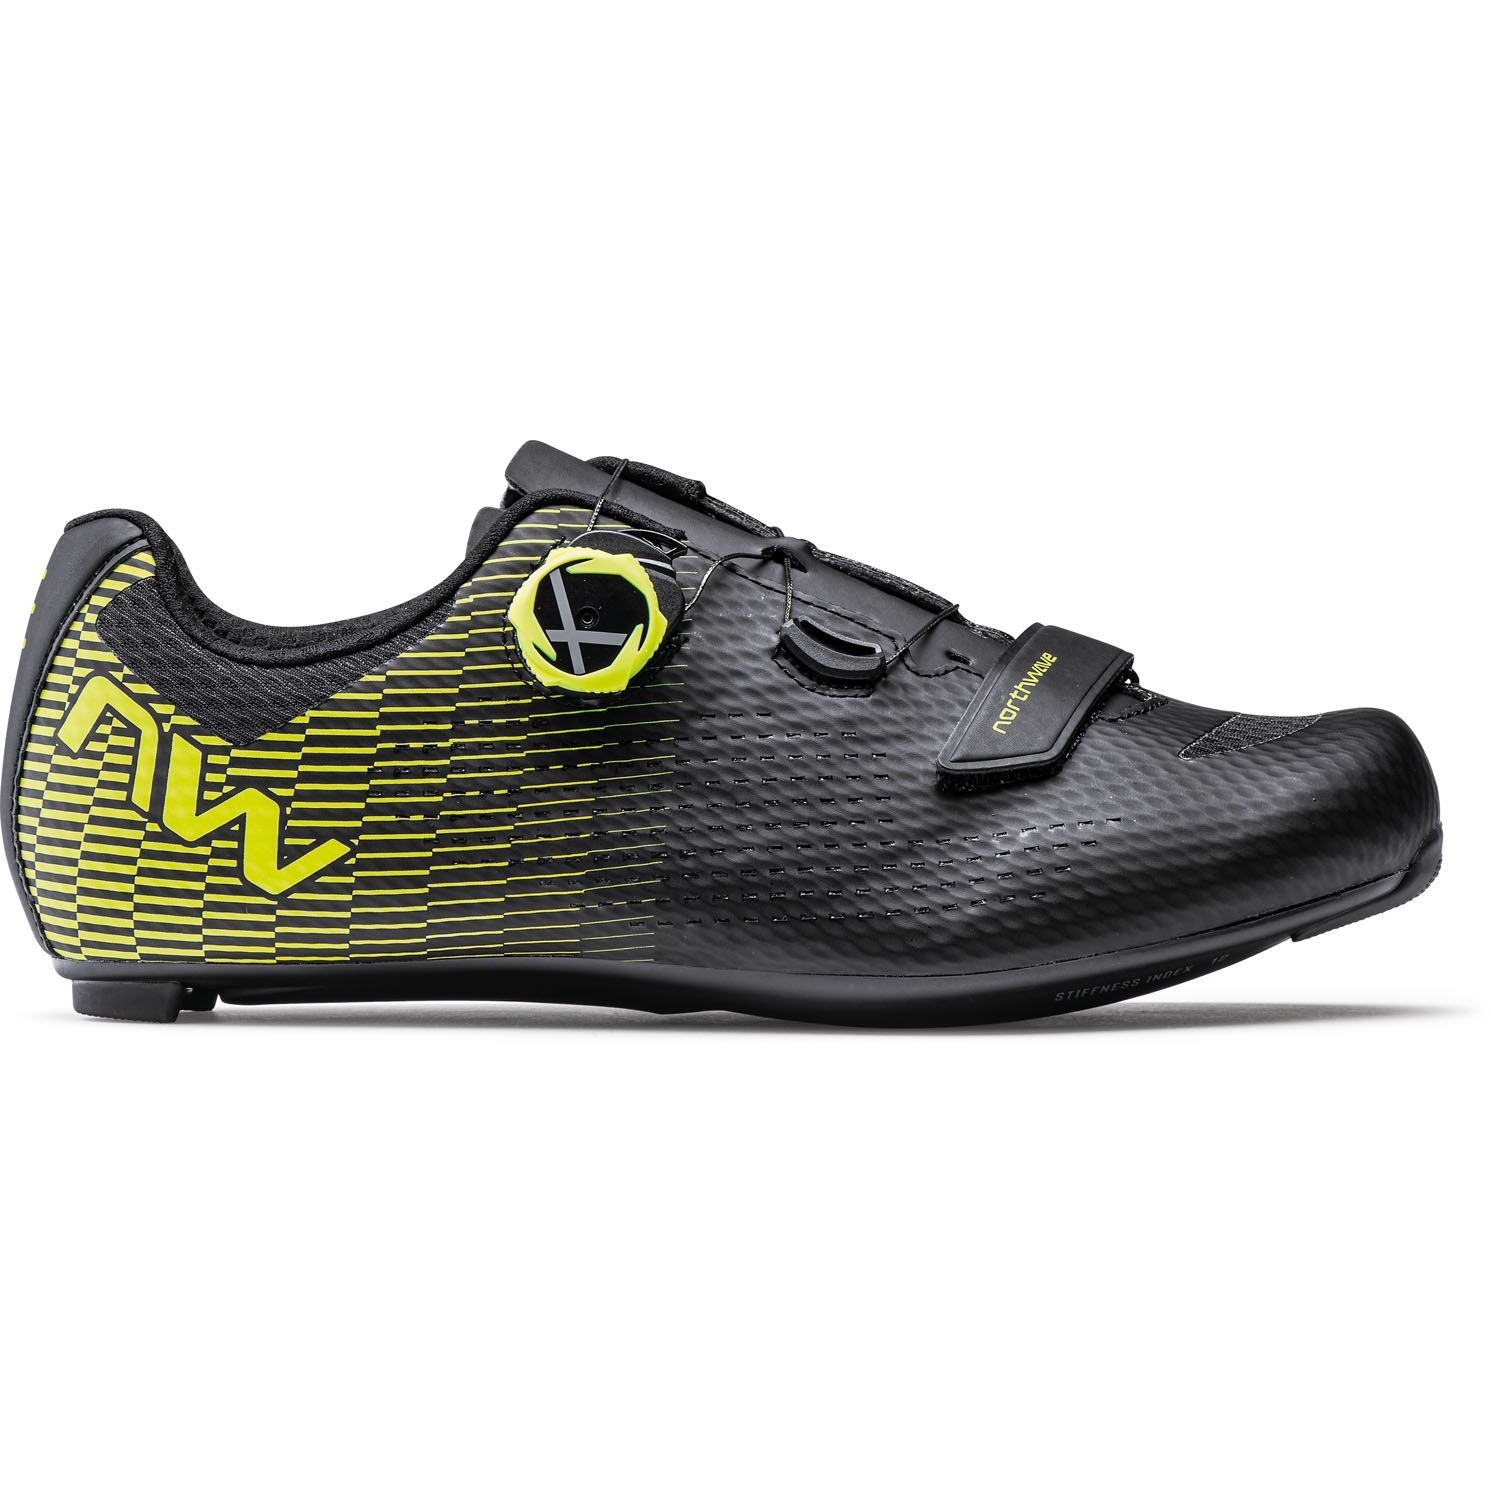 Productfoto van Northwave Storm Carbon 2 Racefietsschoenen Heren - zwart/neon geel 04